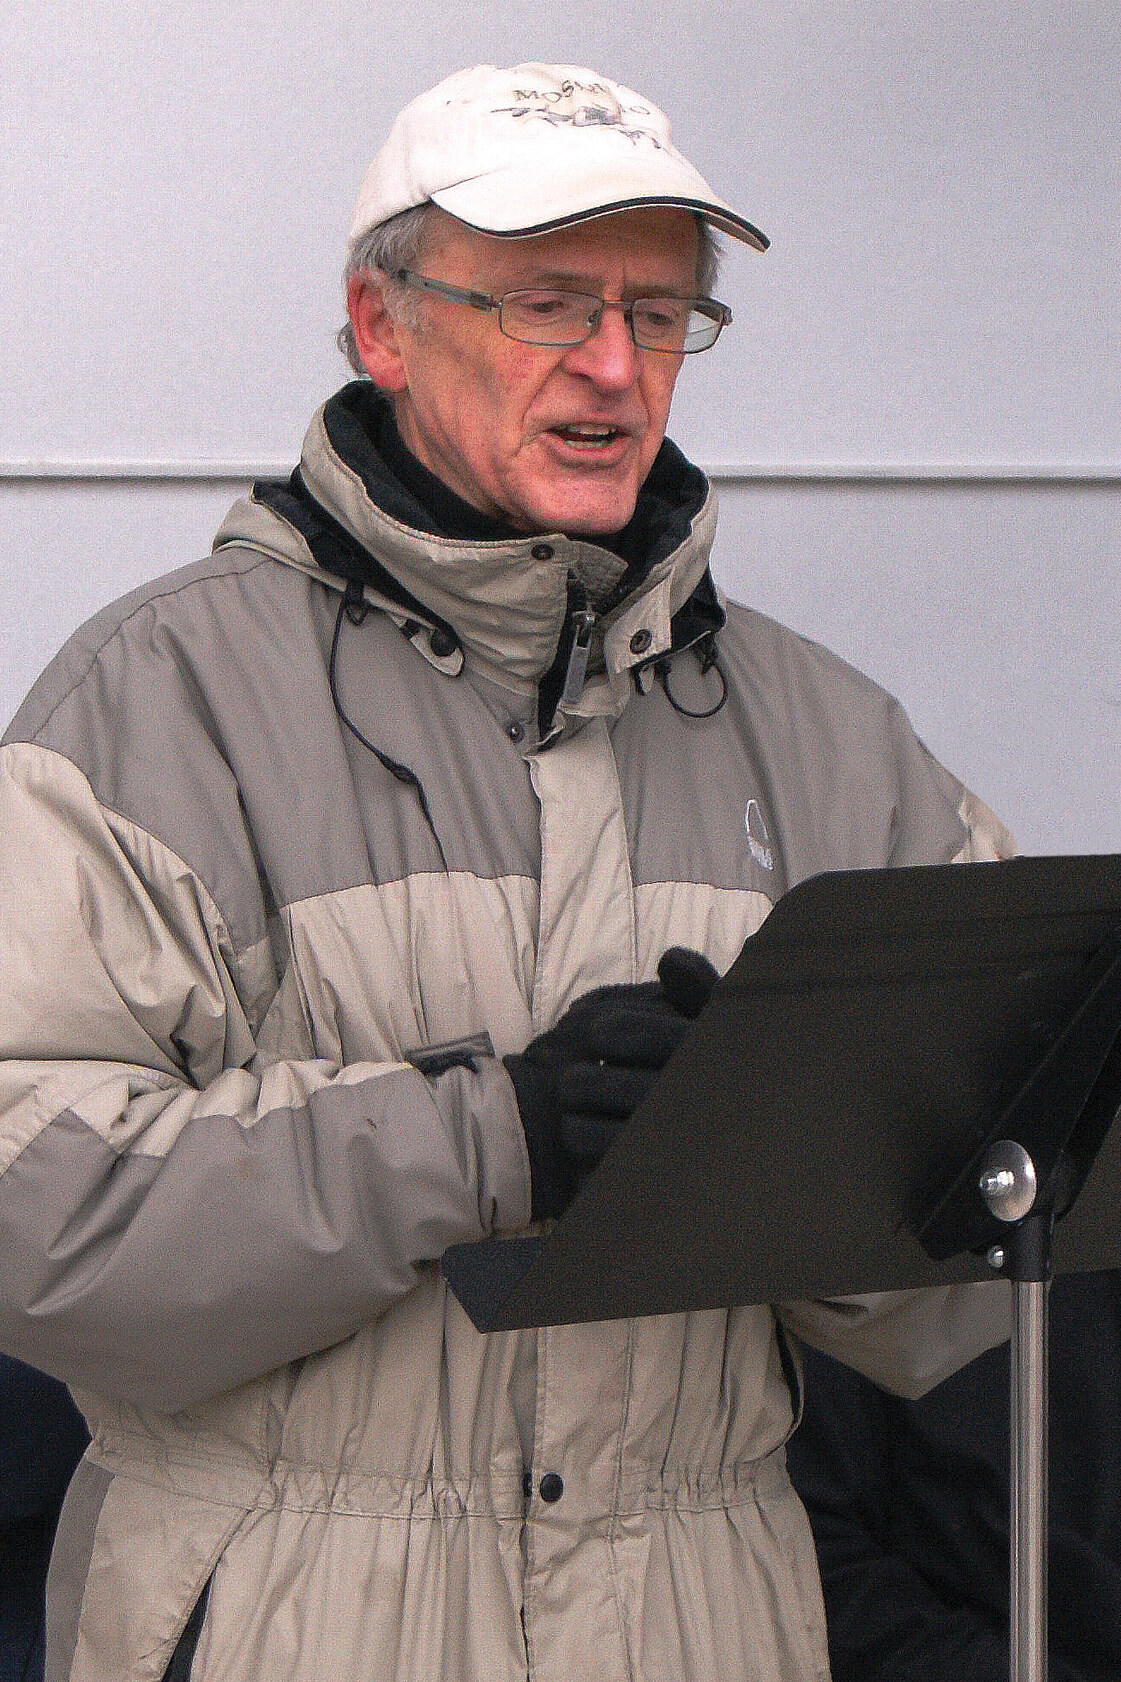 man speaking at a podium